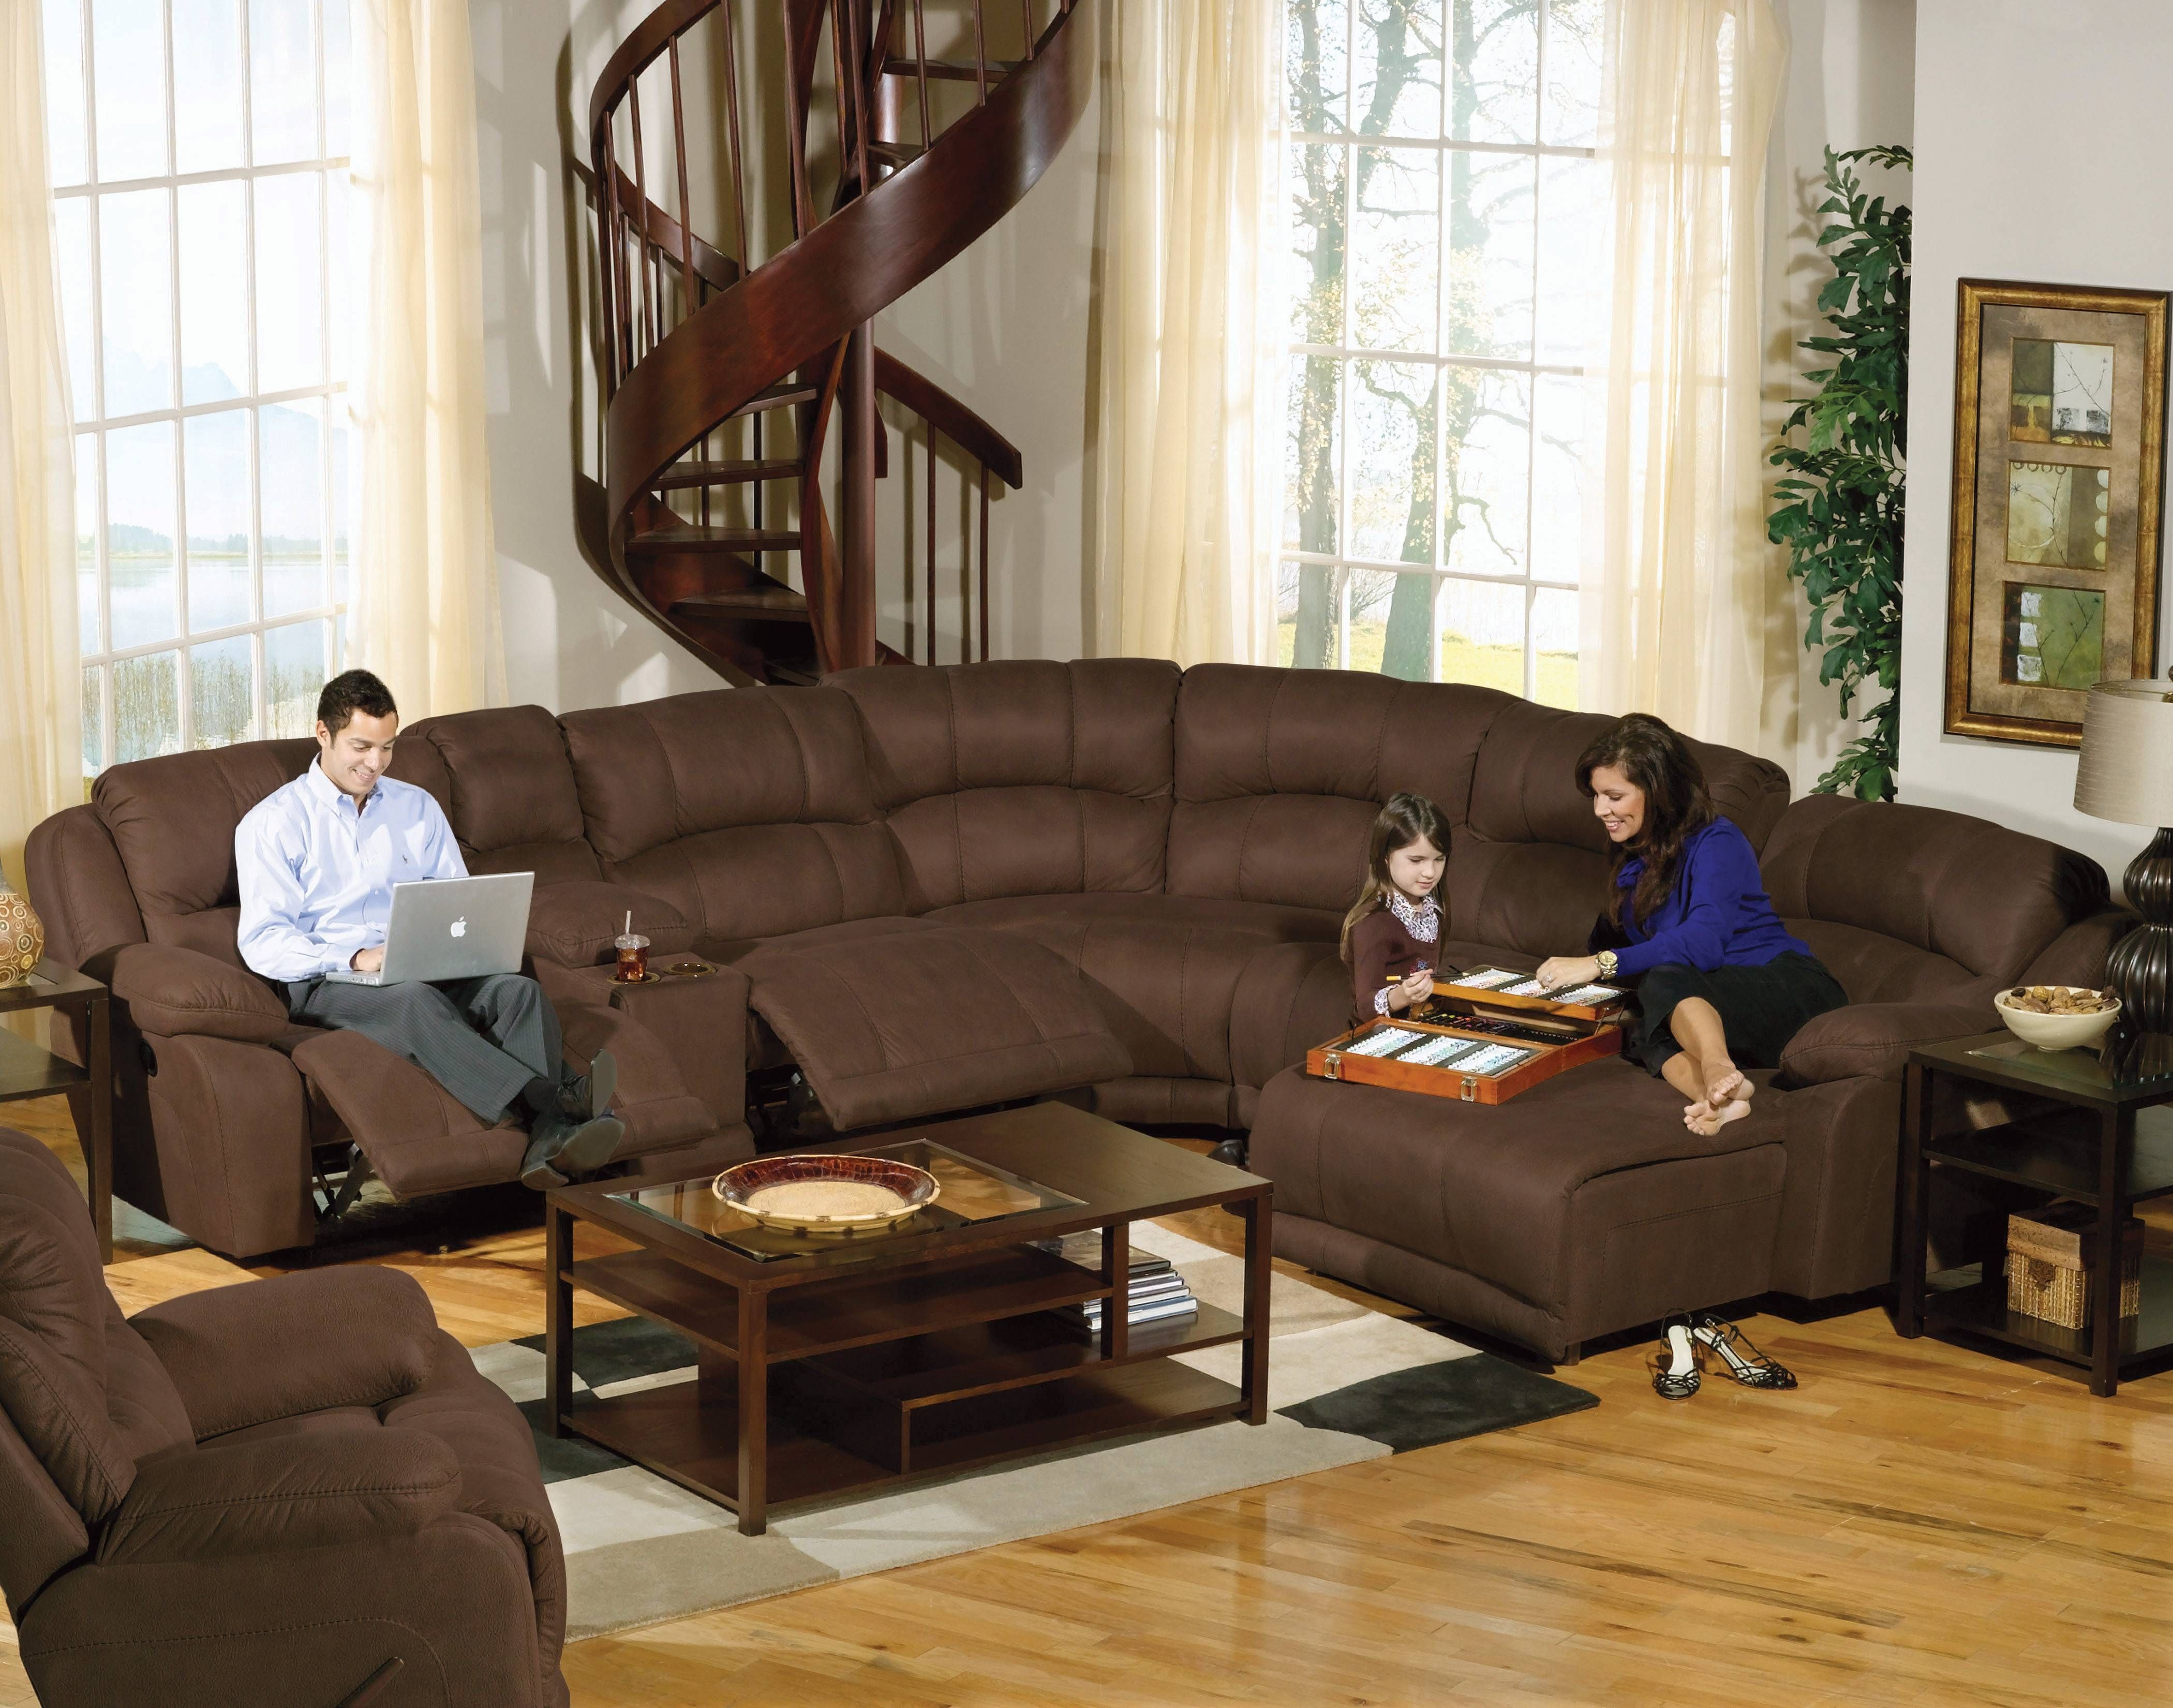 Large Sectional Sofas Full Size Of Sofa14 Wonderful Large Sofa Regarding Extra Large Leather Sectional Sofas 